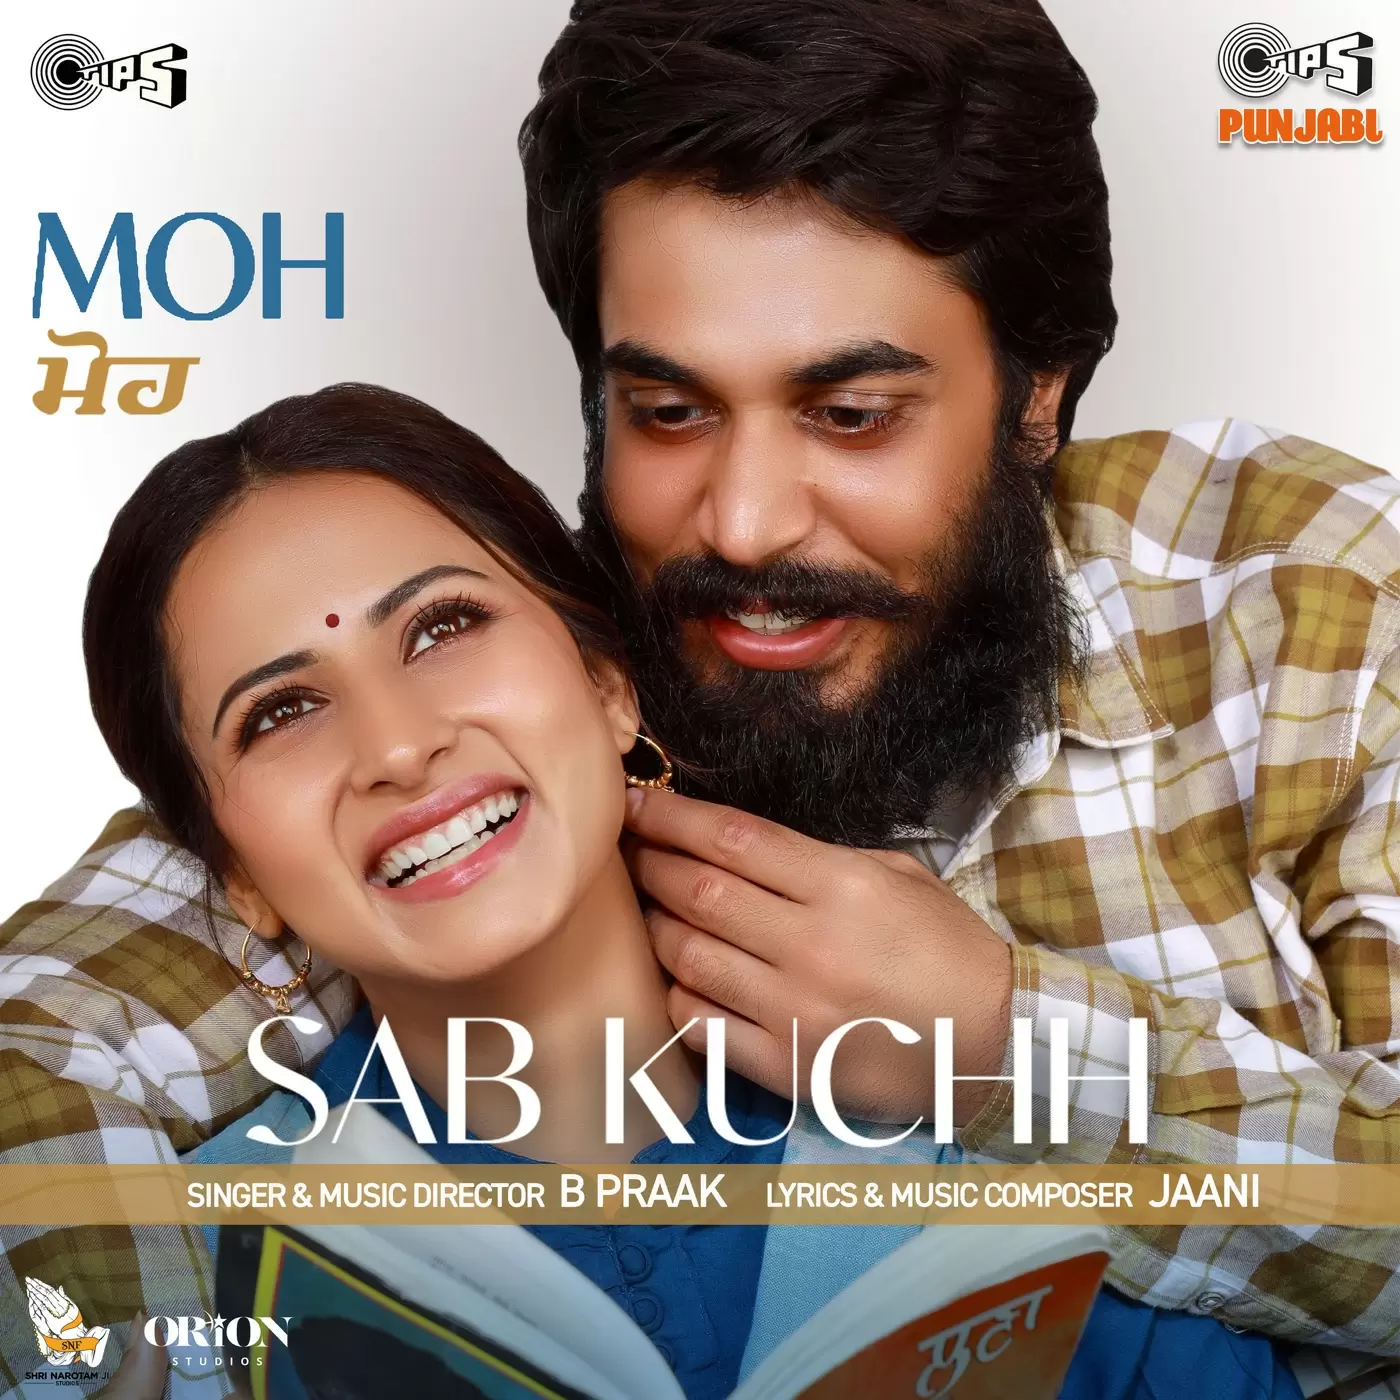 Sab Kuchh B Praak Mp3 Download Song - Mr-Punjab